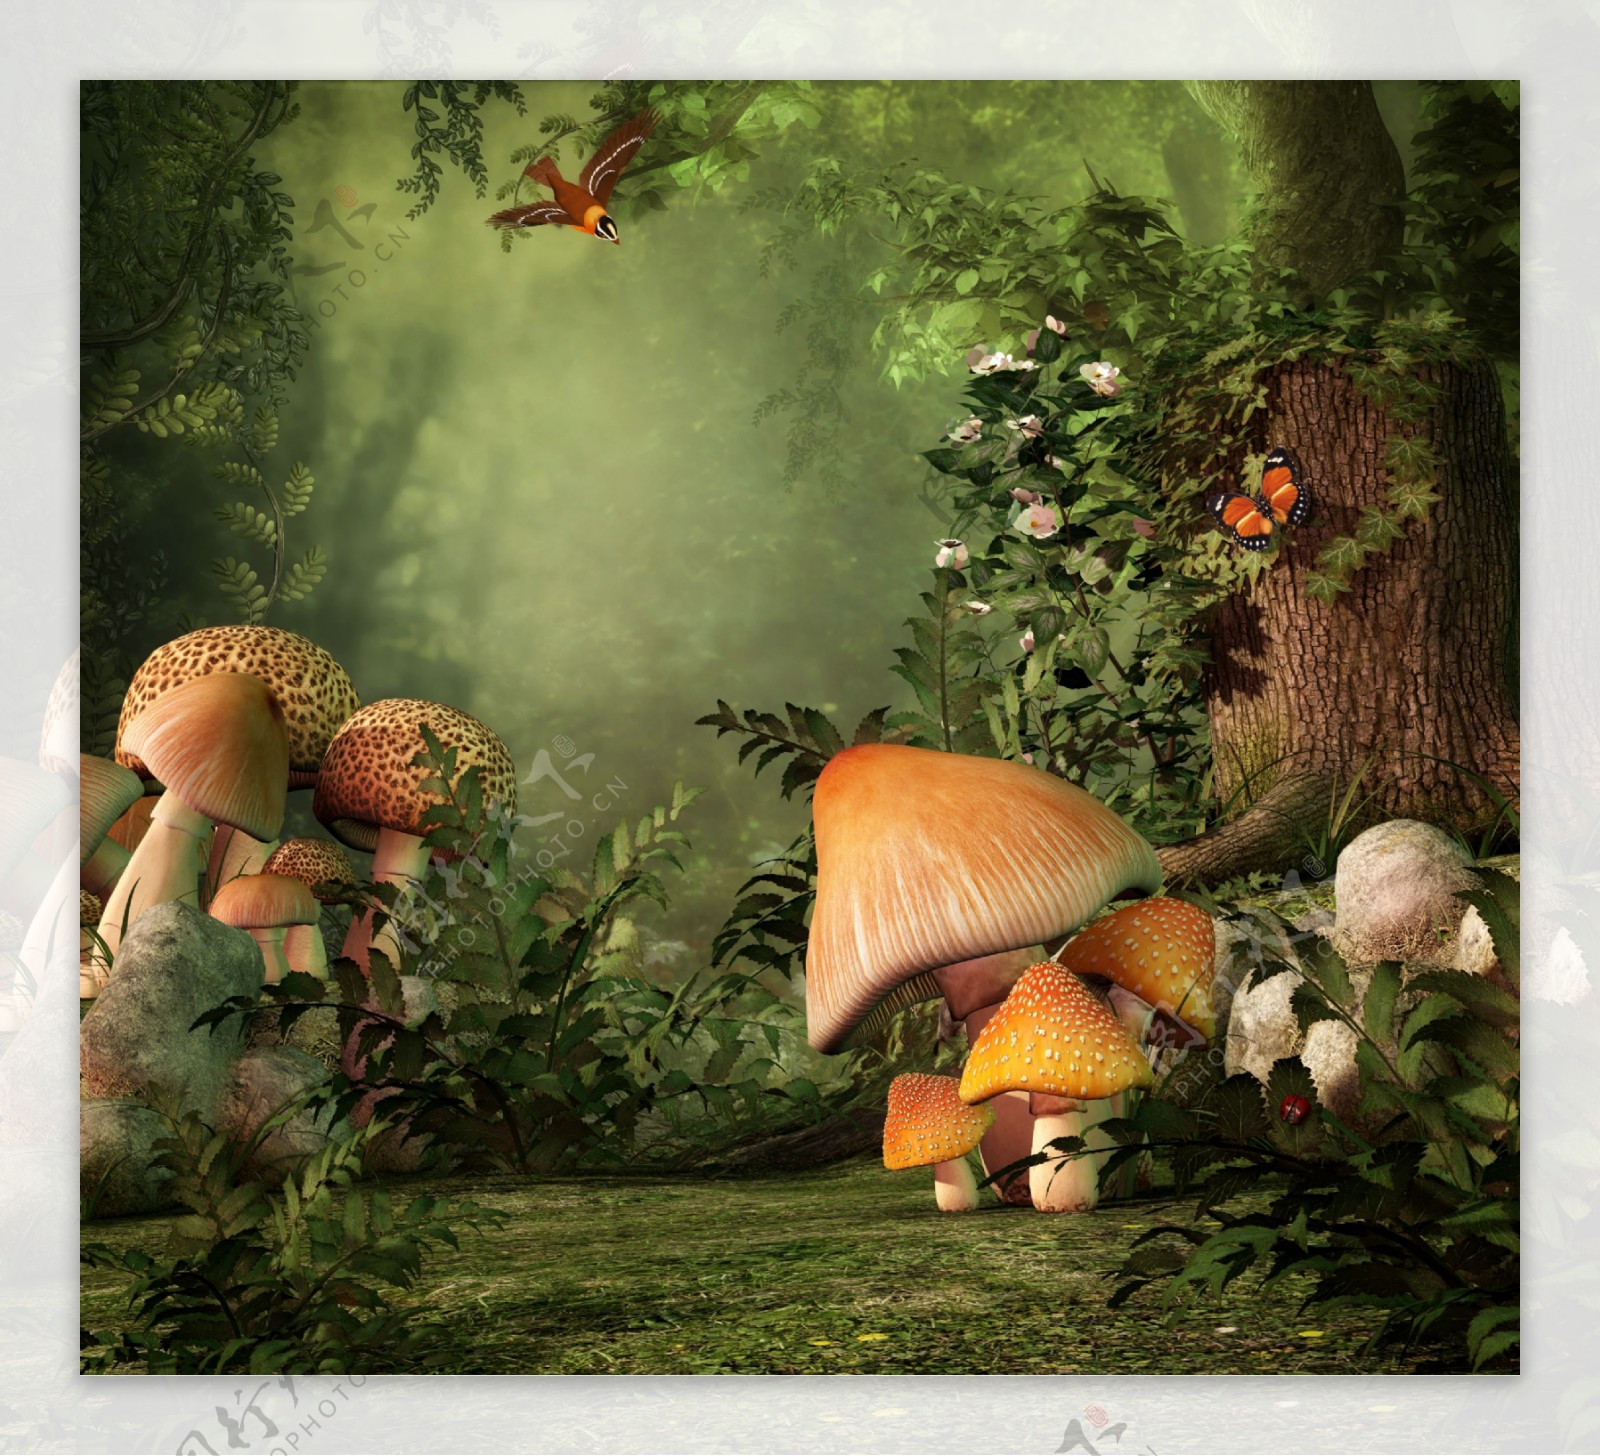 树林里的蘑菇图片